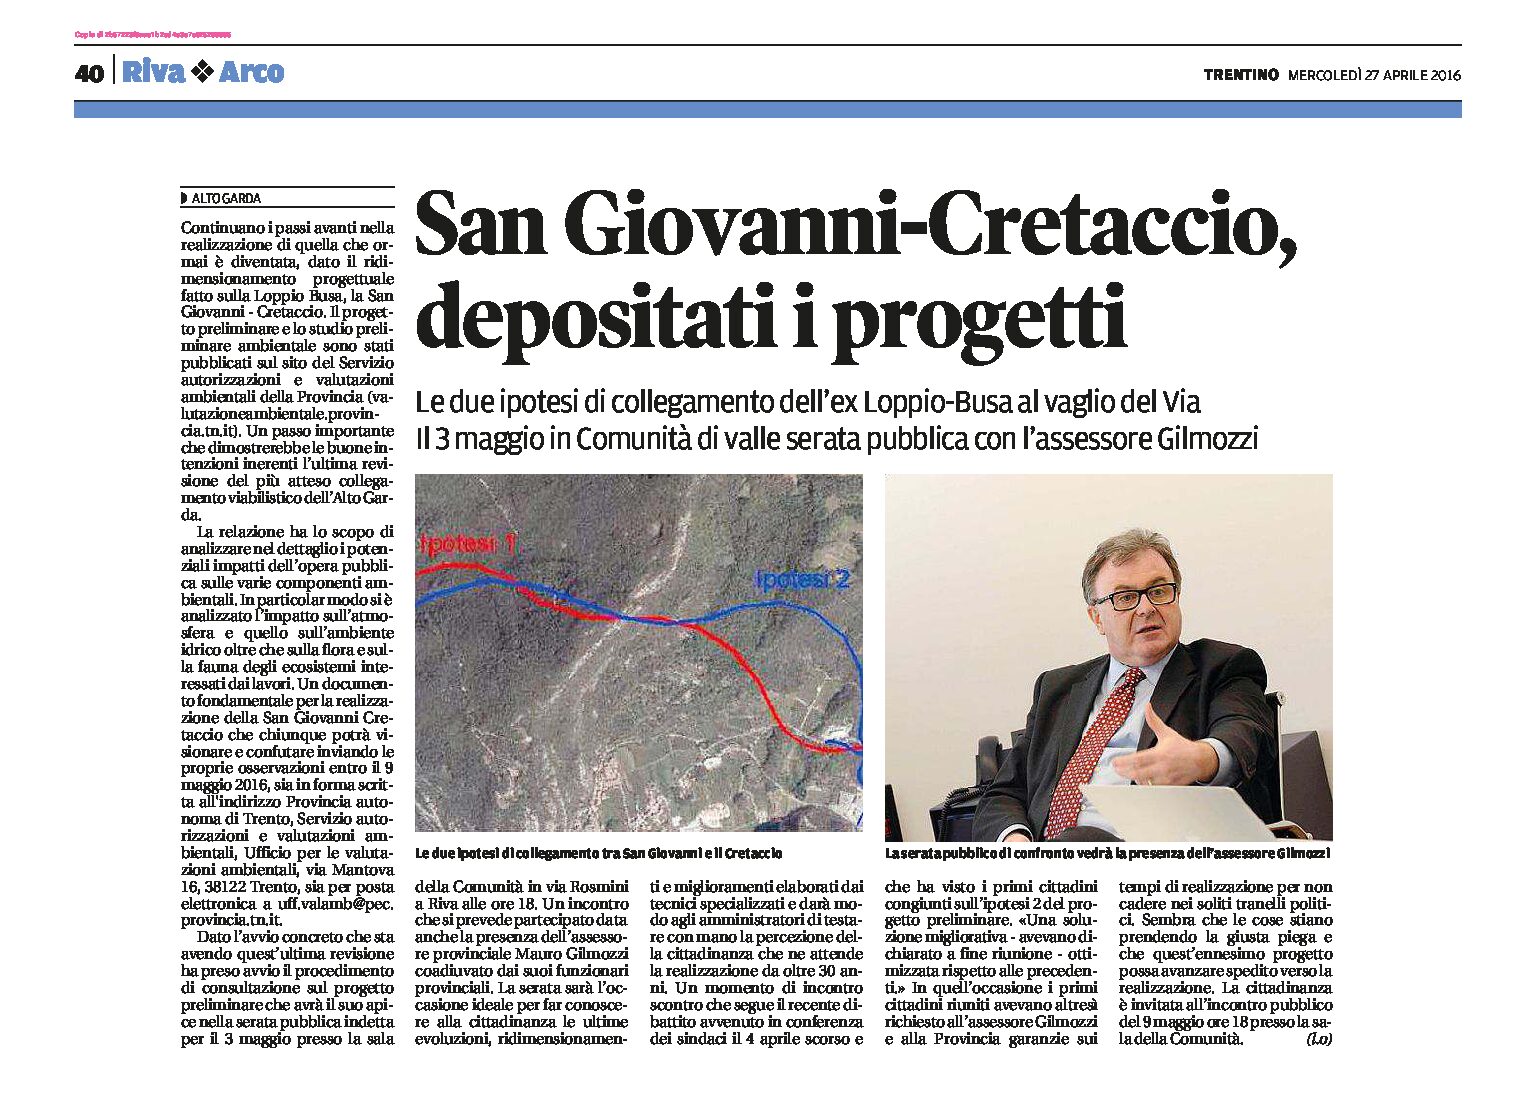 San Giovanni-Cretaccio (Loppio-Busa): depositati i progetti